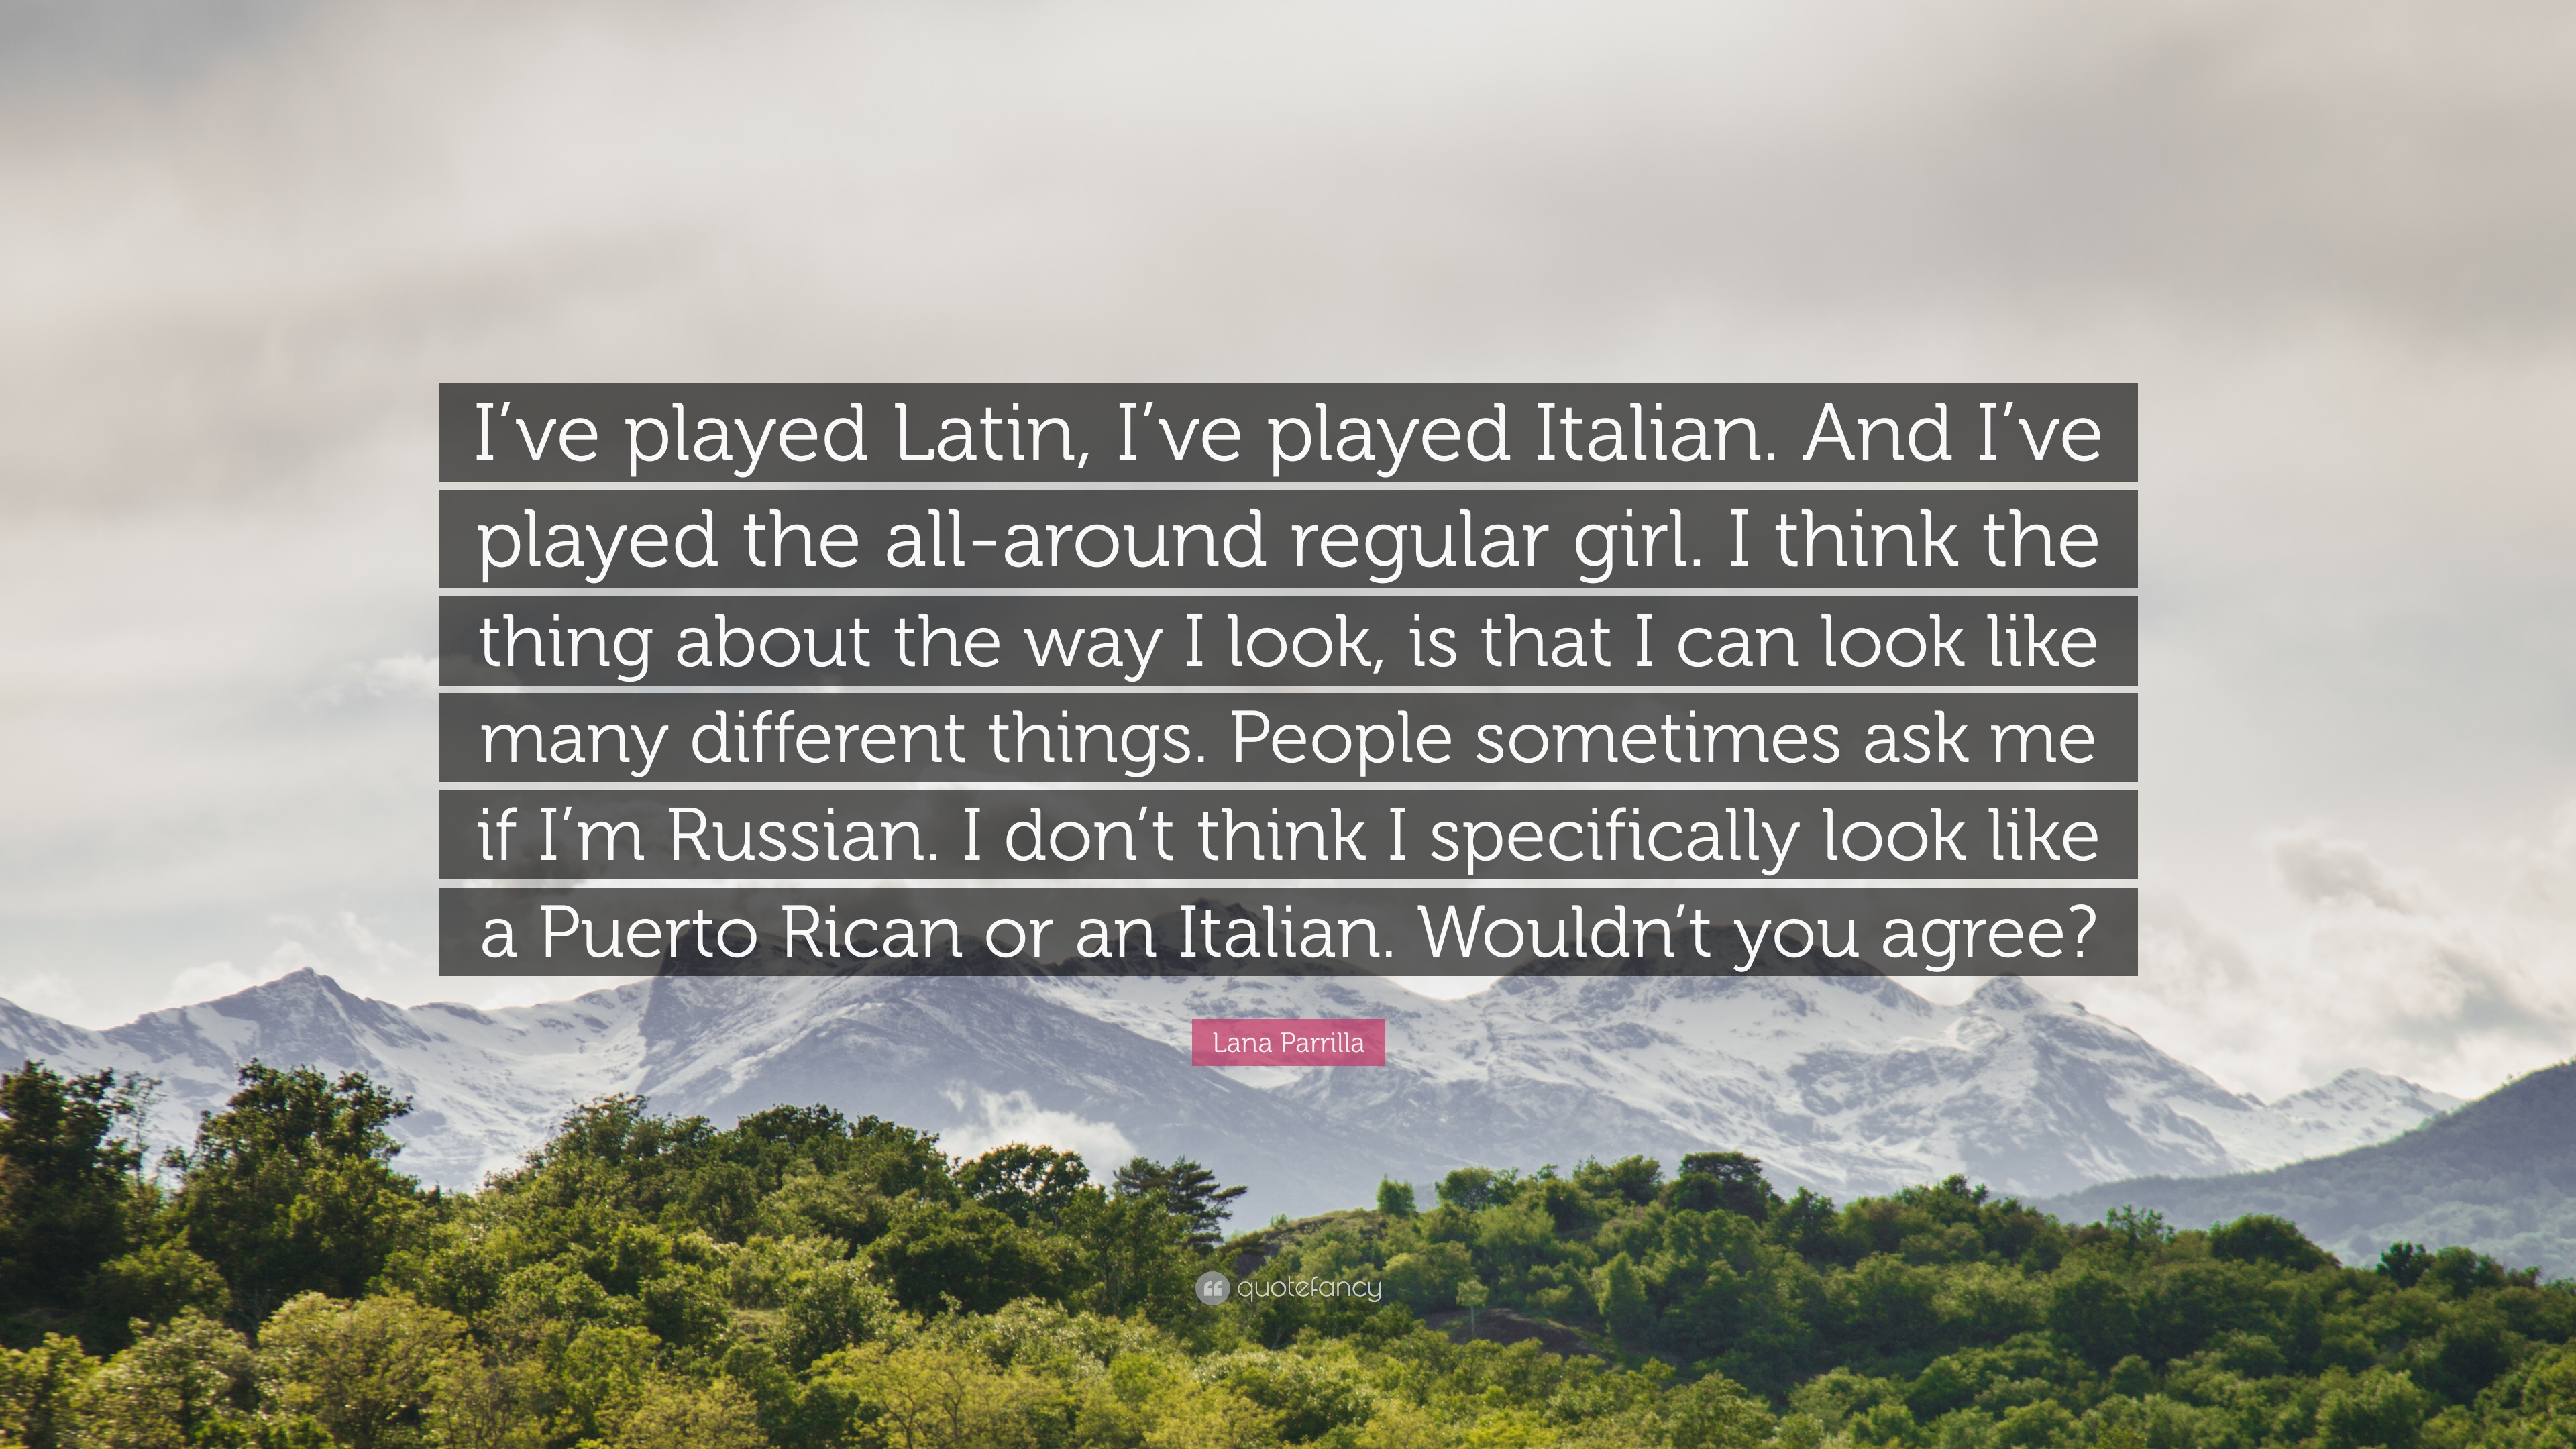 Lana Parrilla Quote: “I've played Latin, I've played Italian. And I